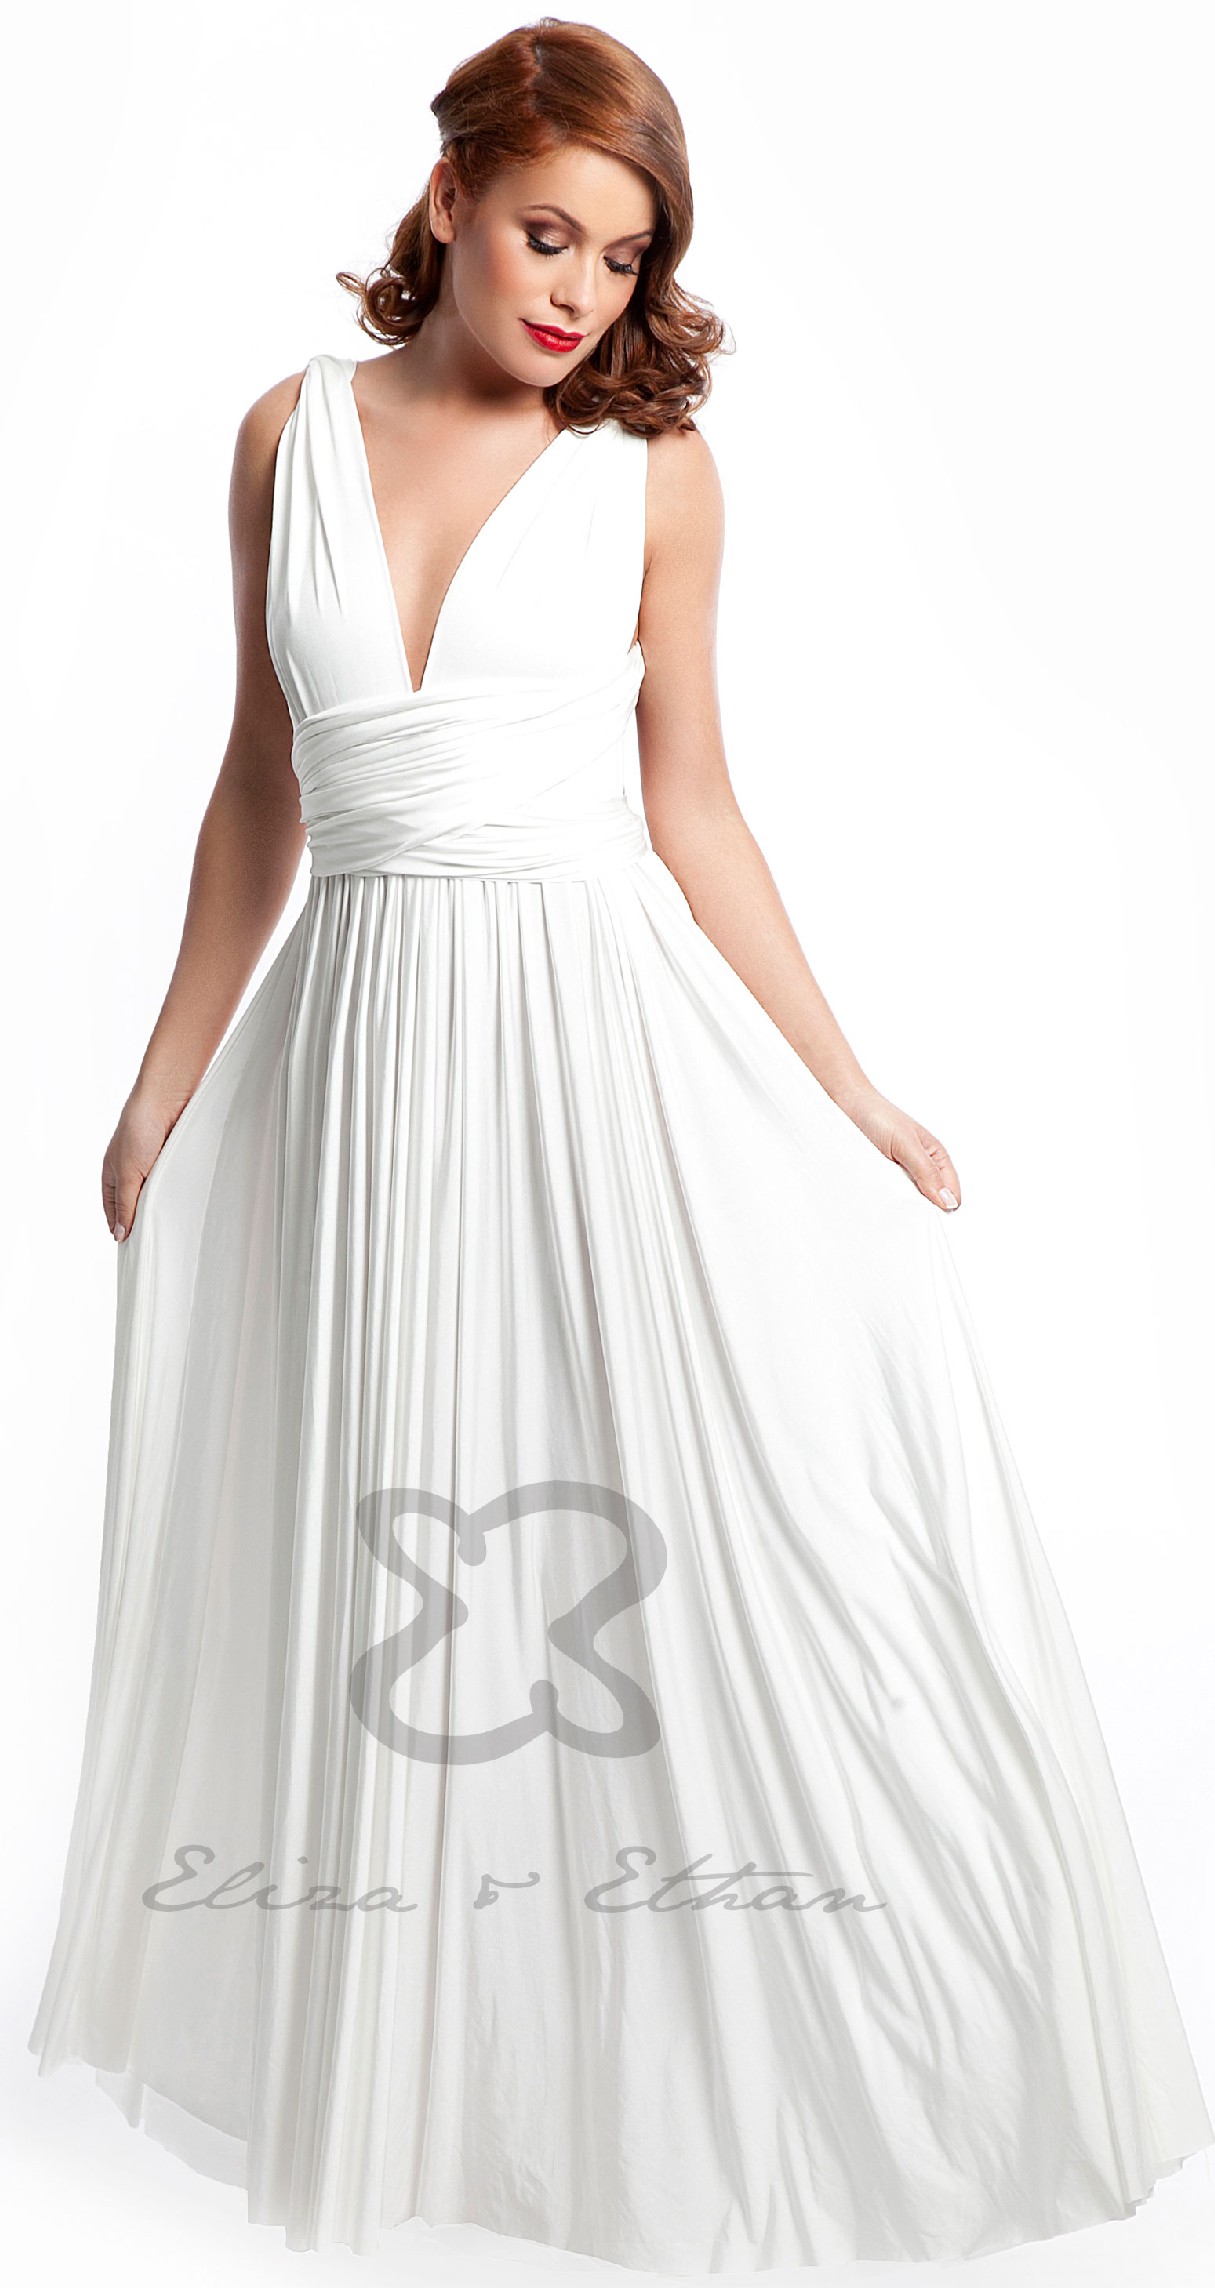 Eliza \u0026 Ethan Multiwrap Dress New Wedding Dress Save 21% - Stillwhite